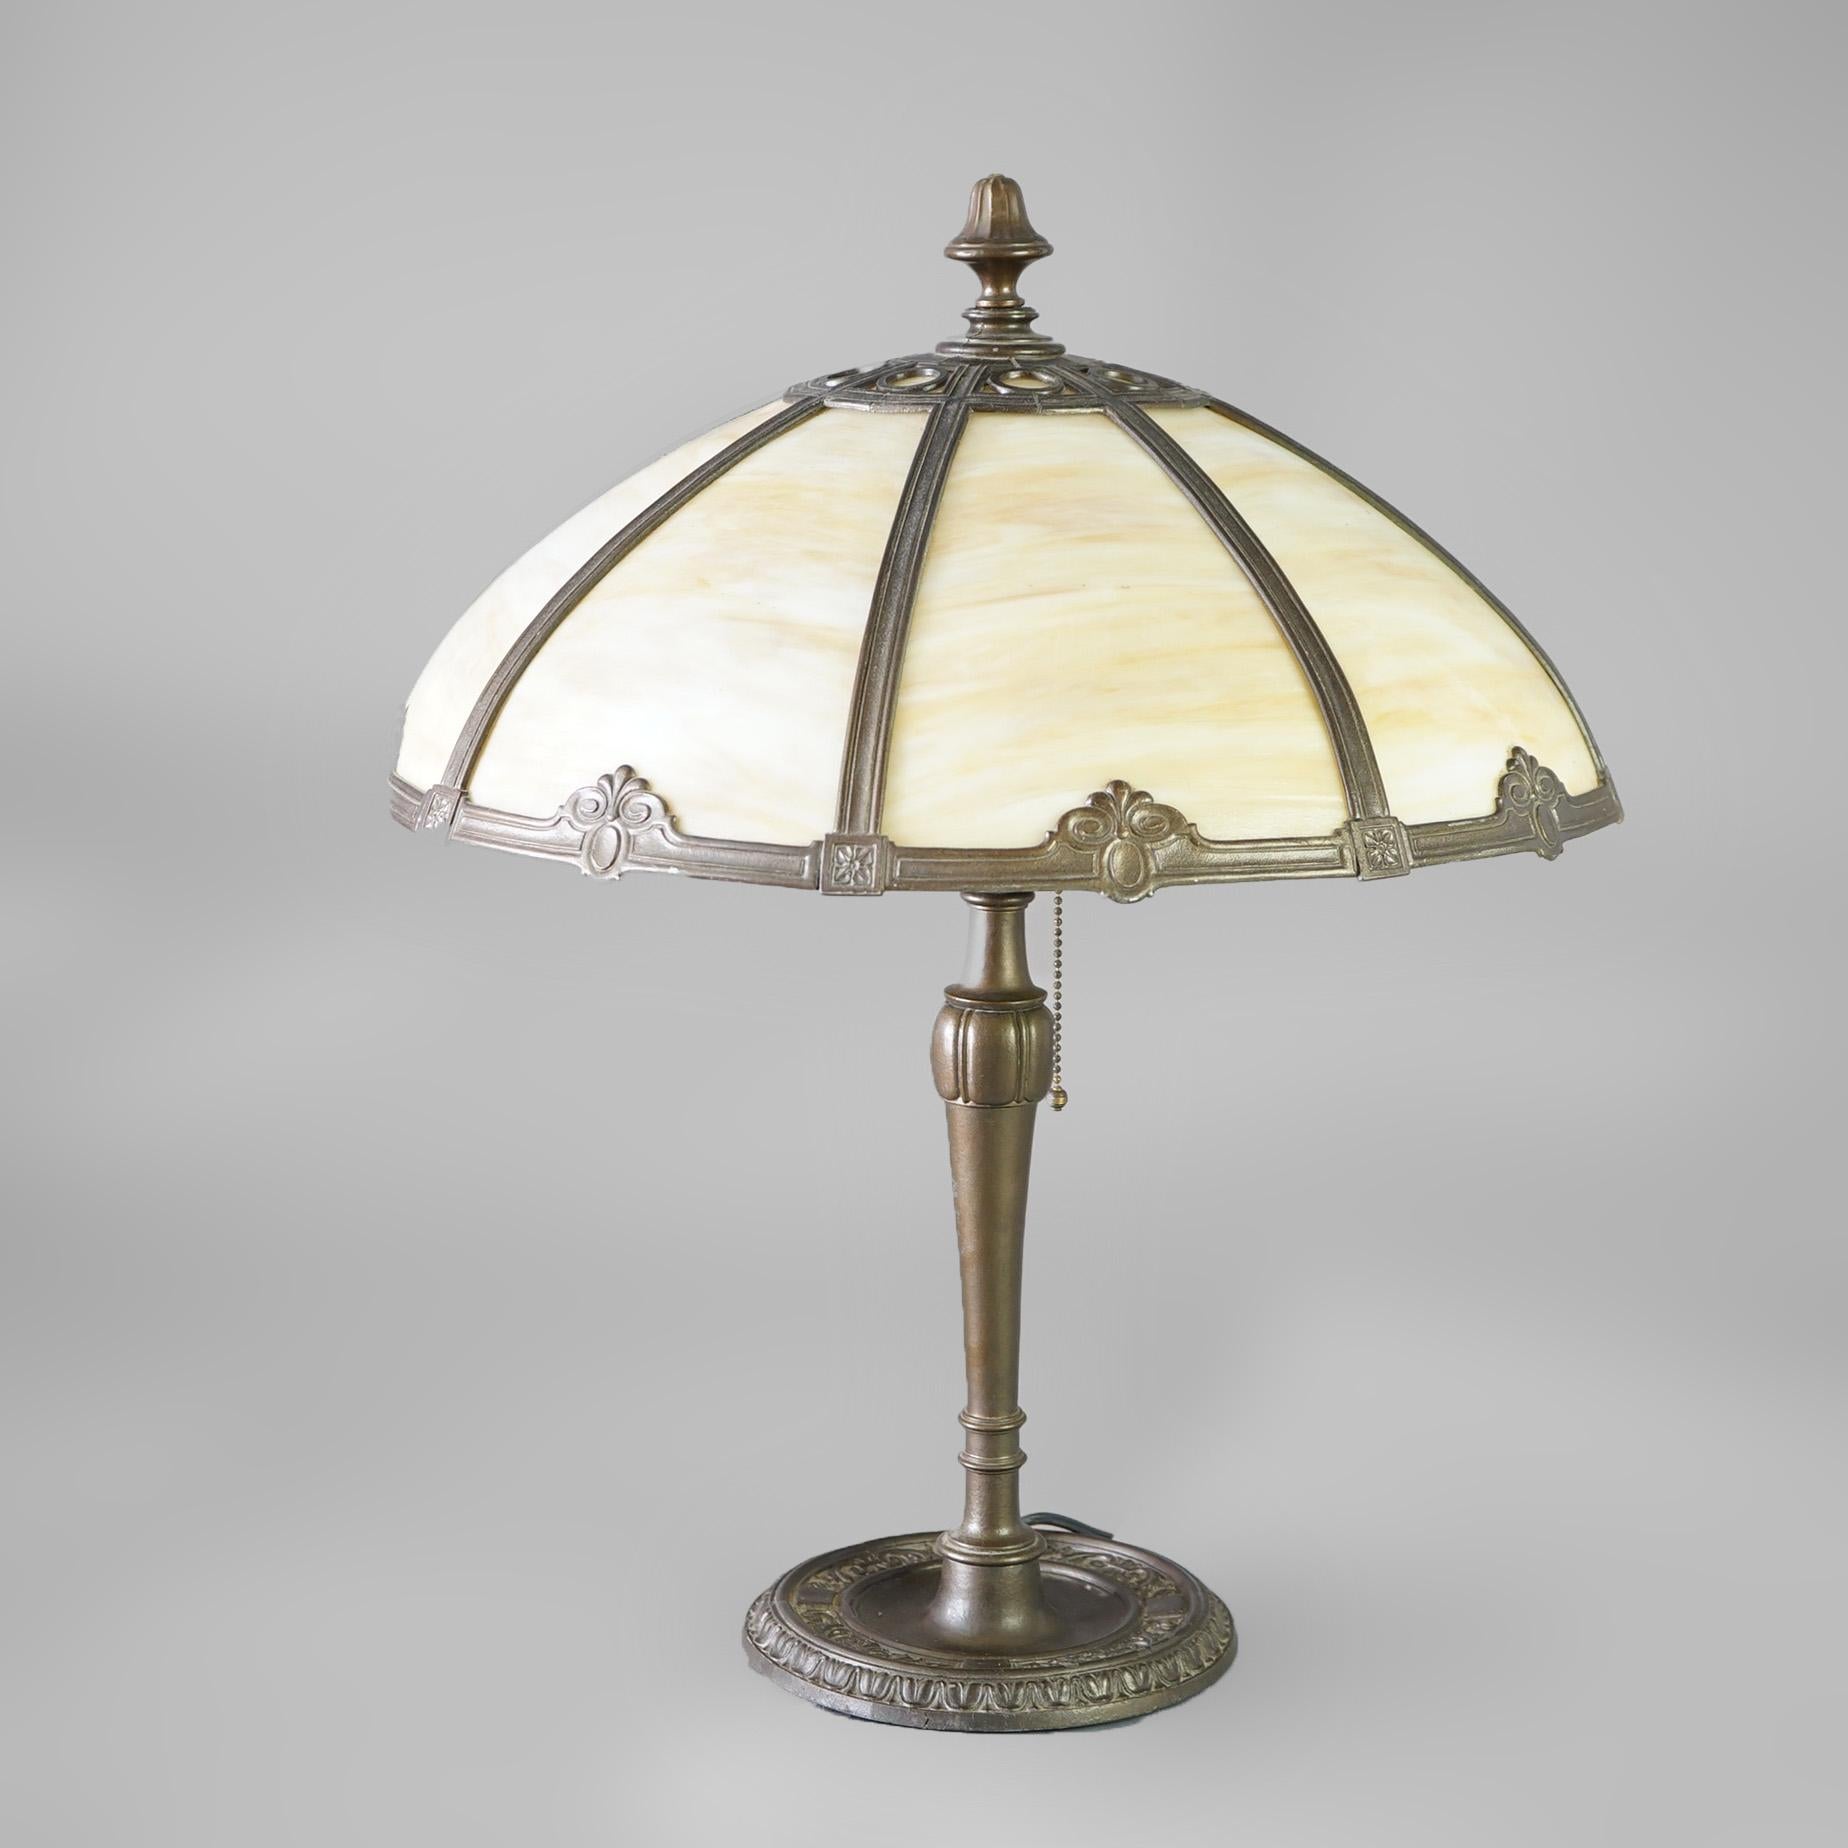 The House of Antiques lampe de table avec abat-jour en forme de dôme, cadre avec éléments floraux stylisés et panneaux en verre de scorie courbé, sur un socle en fonte à deux douilles, vers 1920.

Mesures - 23 